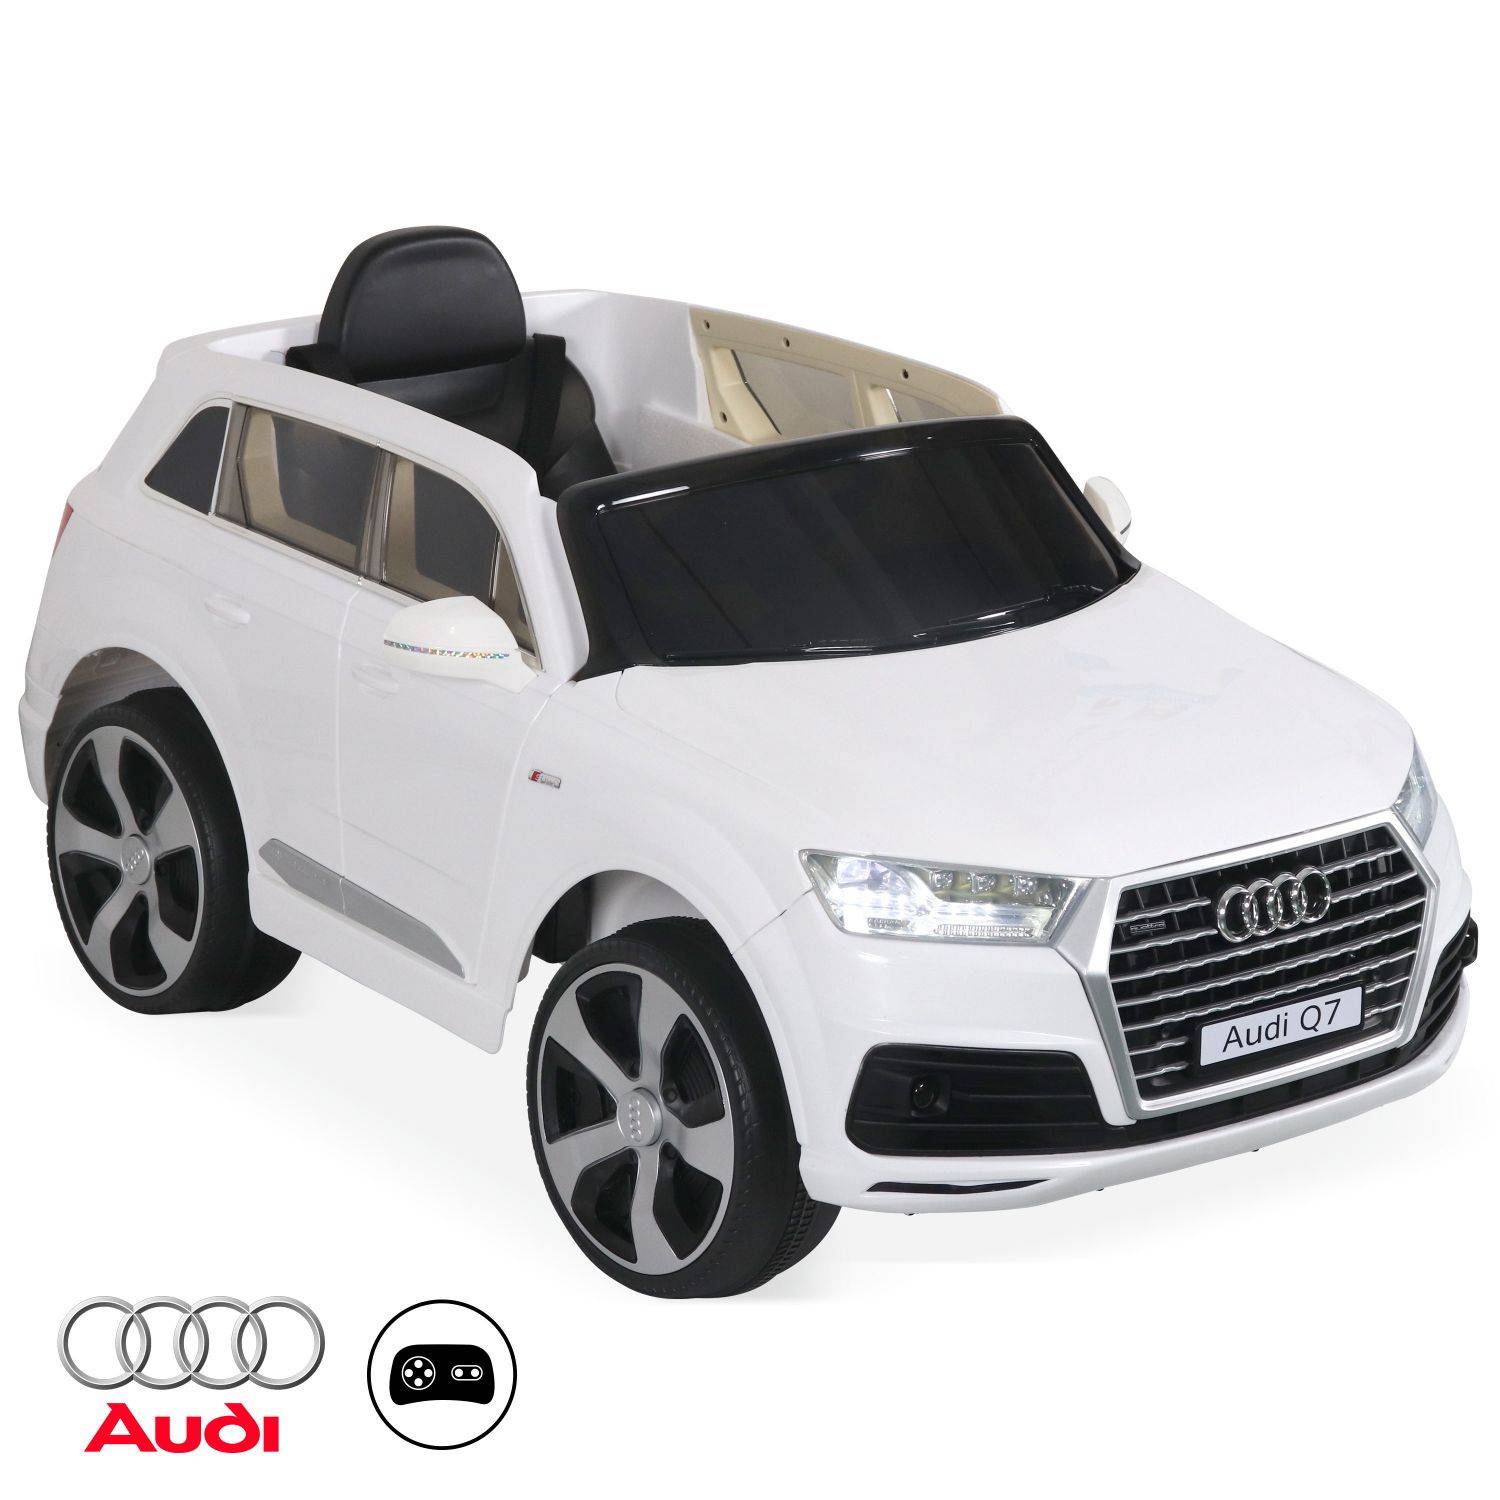 AUDI Q7 Blanc, voiture électrique 12V, 1 place, 4x4 pour enfants avec autoradio et télécommande Photo1